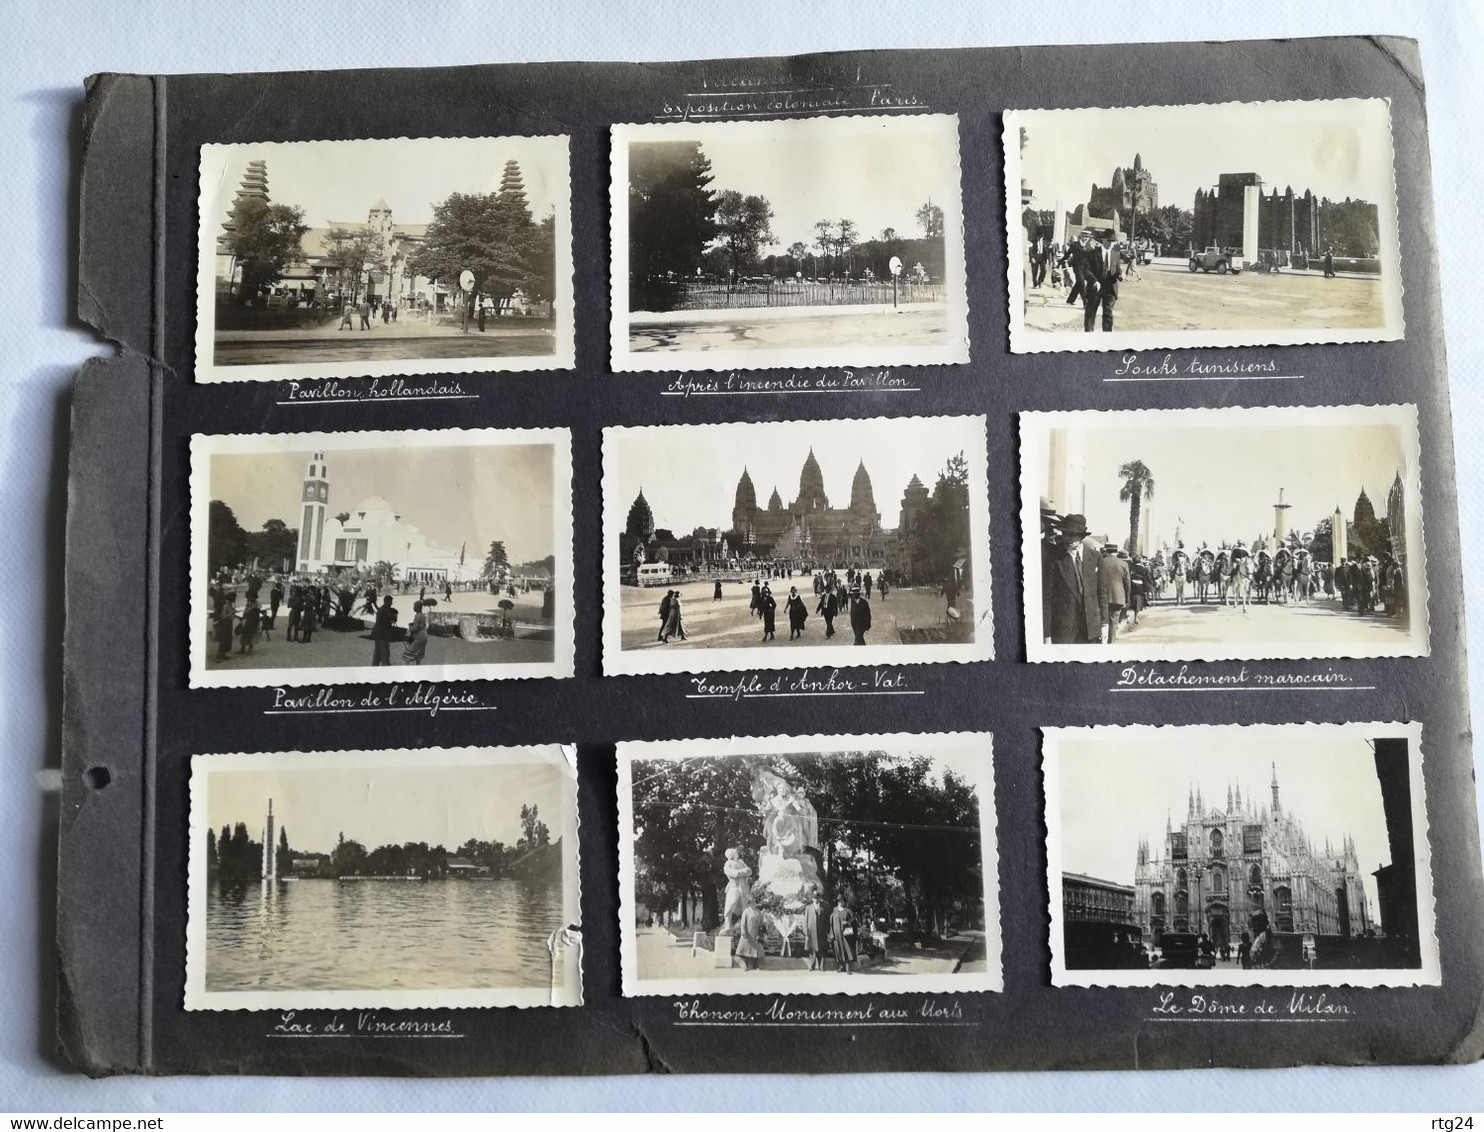 122 photos album  voyage  années 1927à 1939 .multiples endroits de  Suisse et de  France  , expo coloniale Paris 1931.